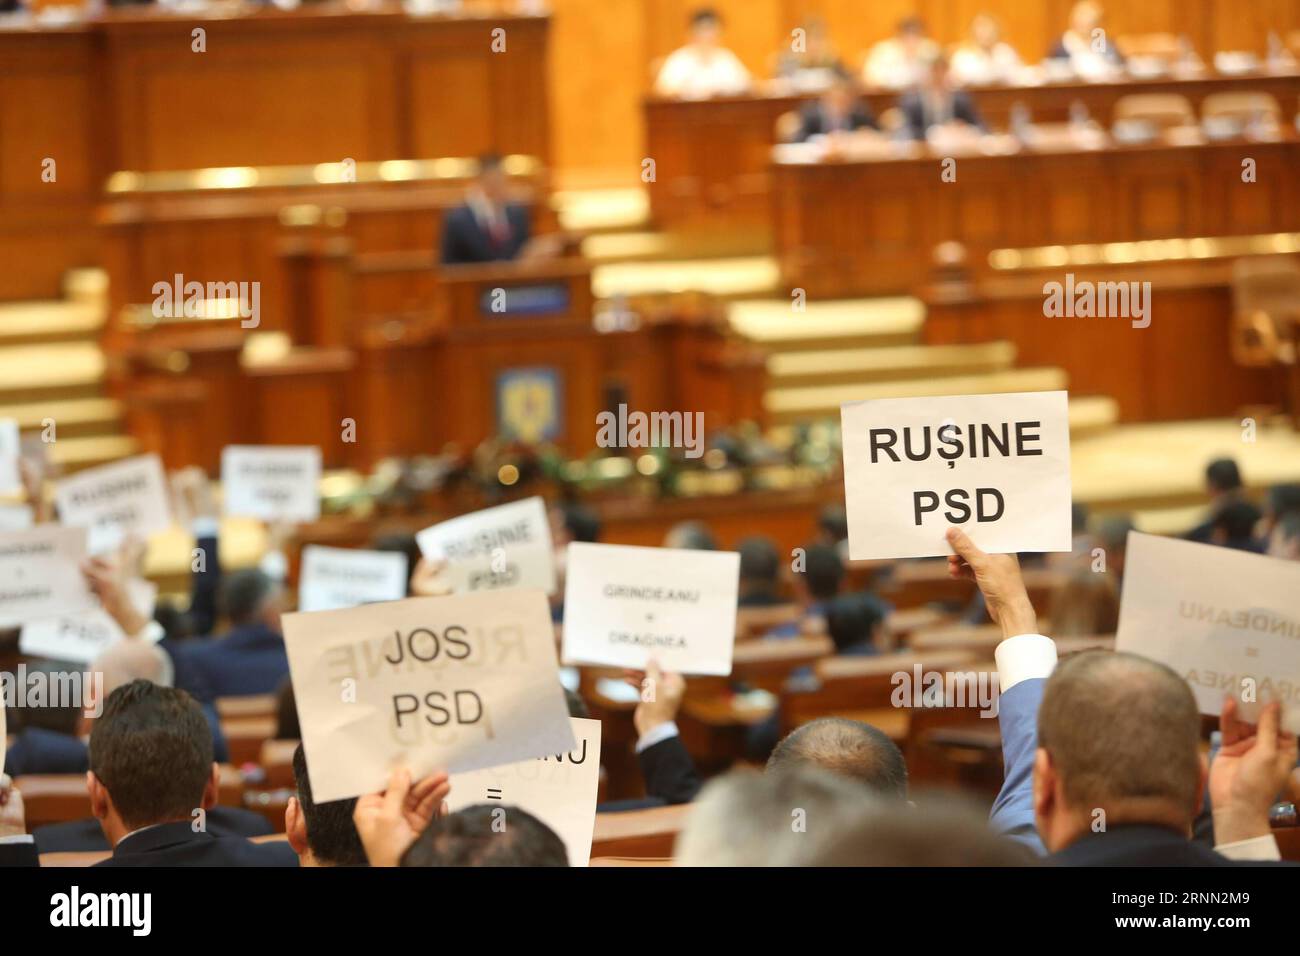 Bilder des Tages 170621 -- BUCAREST, 21 juin 2017 -- les oppositions manifestent devant le Parlement devant une motion de censure à Bucarest, Roumanie, le 21 juin 2017. Une motion de censure de la coalition au pouvoir roumaine a renversé mercredi le gouvernement social-démocrate dirigé par Sorin Grindeanu, établissant un précédent historique dans le pays que la majorité parlementaire a destitué son propre gouvernement. hy ROUMANIE-BUCAREST-GOUVERNEMENT-CENSURE-VOTE GabrielxPetrescu PUBLICATIONxNOTxINxCHN Banque D'Images